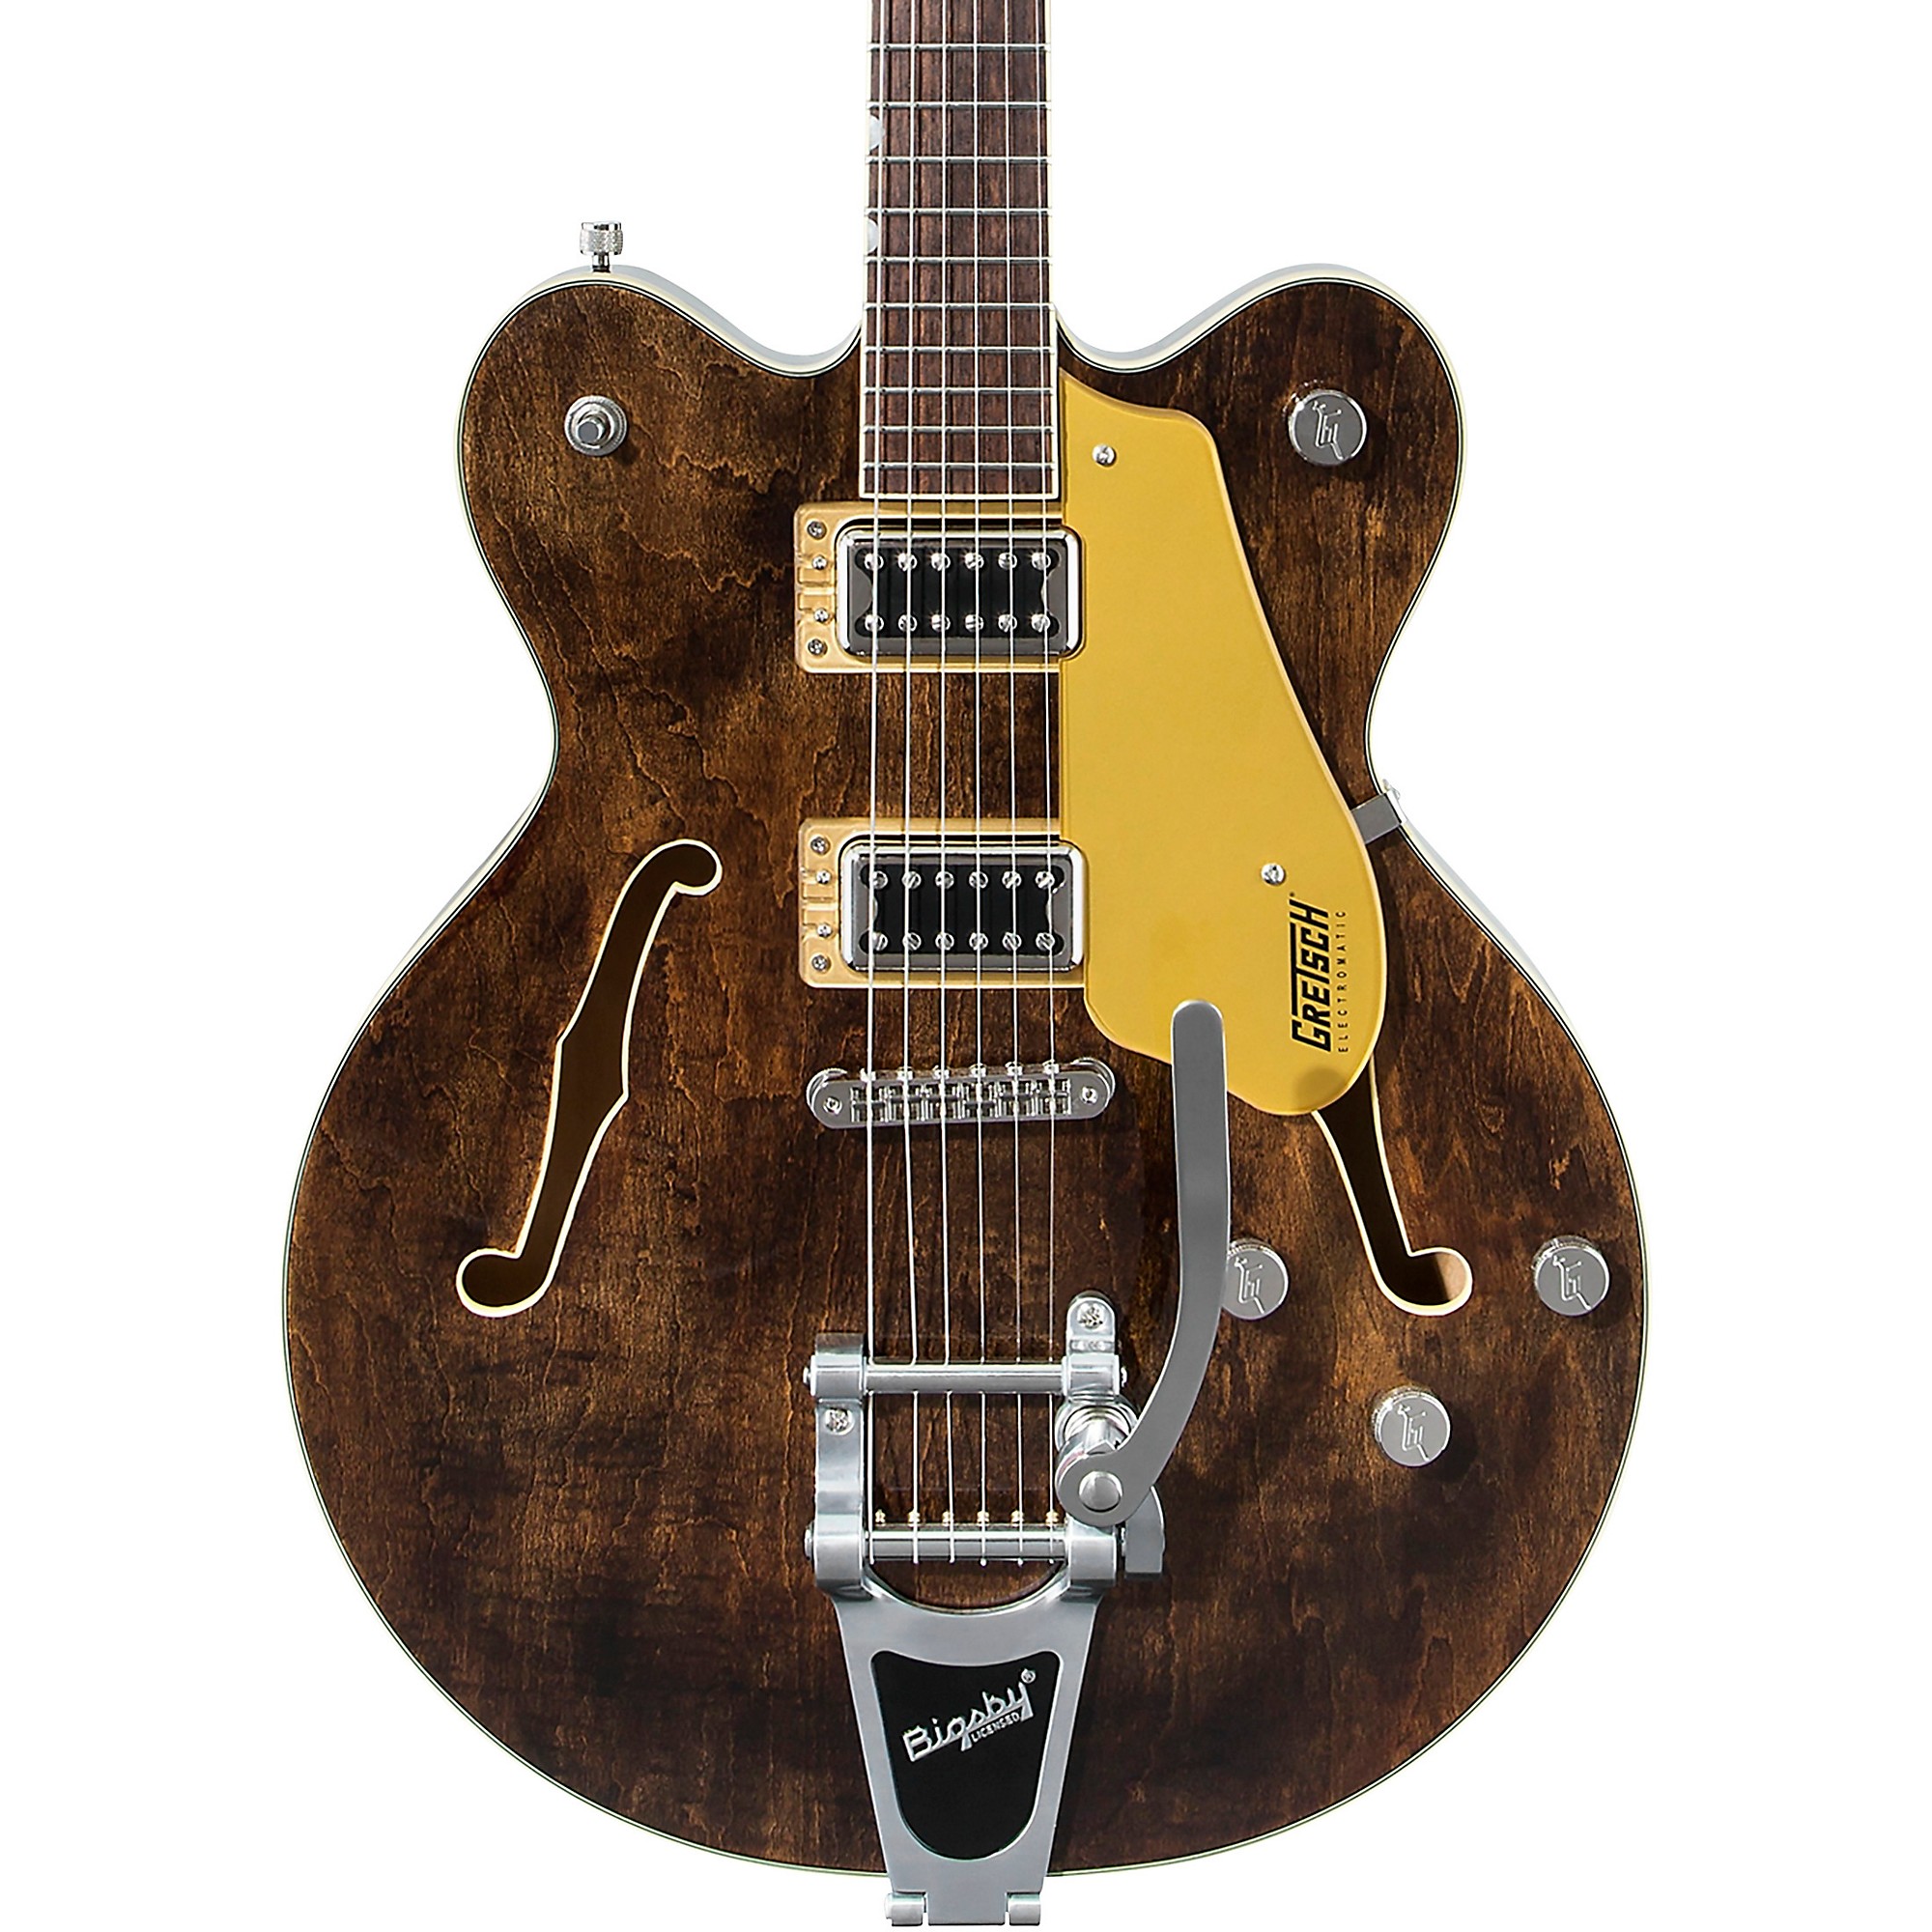 Gretsch Guitars G5622T Электроматический центральный блок с двойной прорезью и окраской Bigsby Imperial Stain